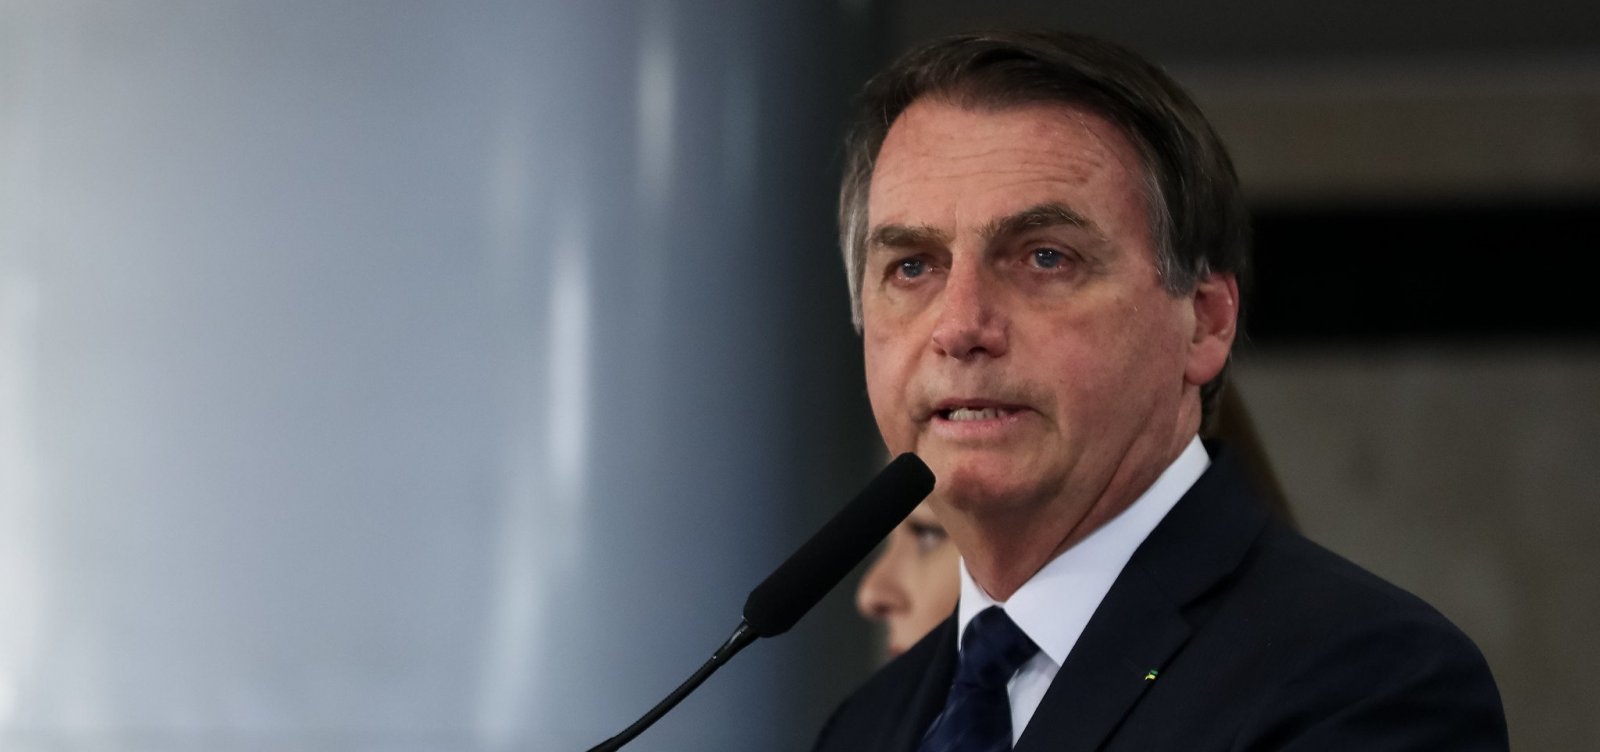 Saque do FGTS deve ser anunciado nesta quinta, afirma Bolsonaro